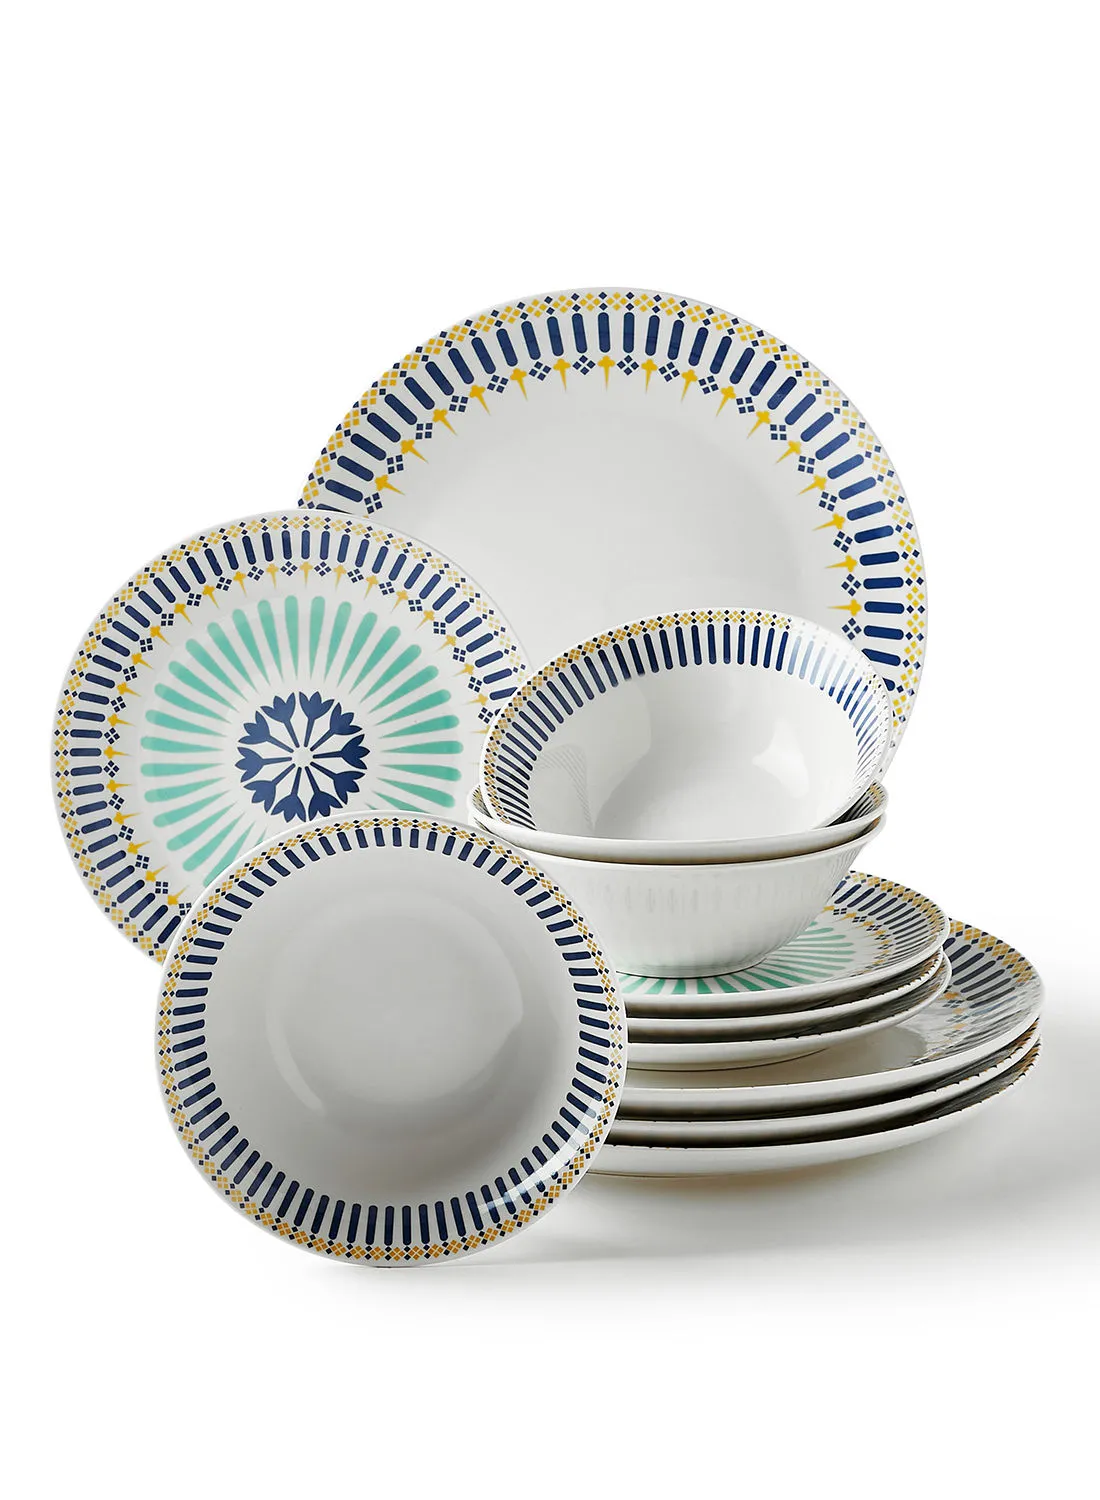 noon east 12 Piece Porcelain Dinner Set - Dishes, Plates - Dinner Plate, Side Plate, Bowl - Serves 4 - Printed Design Casablanca